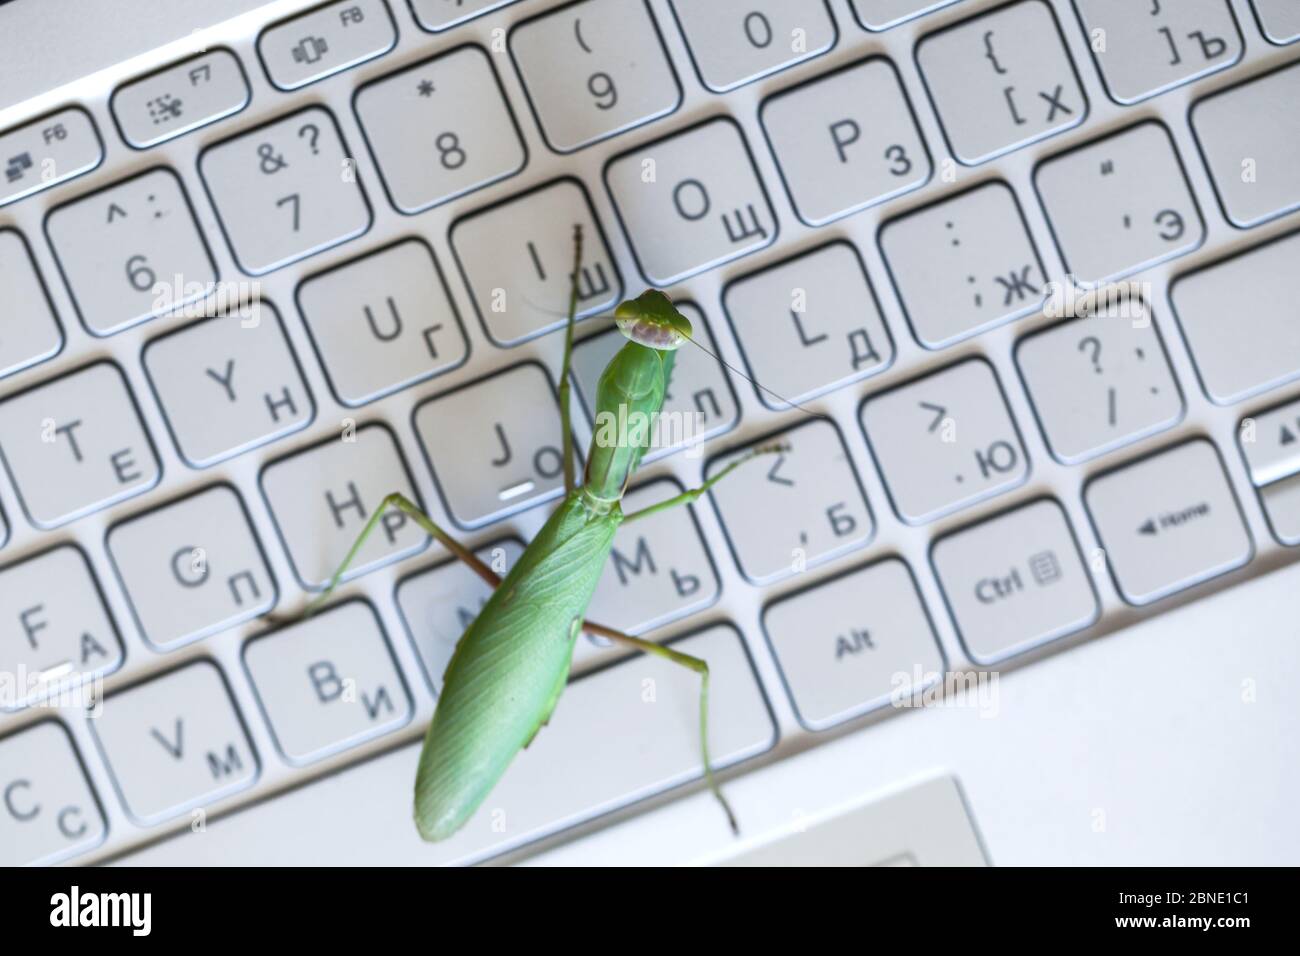 Computer Bug Metapher, große grüne Gottesanbeterin ist auf einem Laptop-Tastatur mit englischen und russischen Buchstaben, Draufsicht Stockfoto